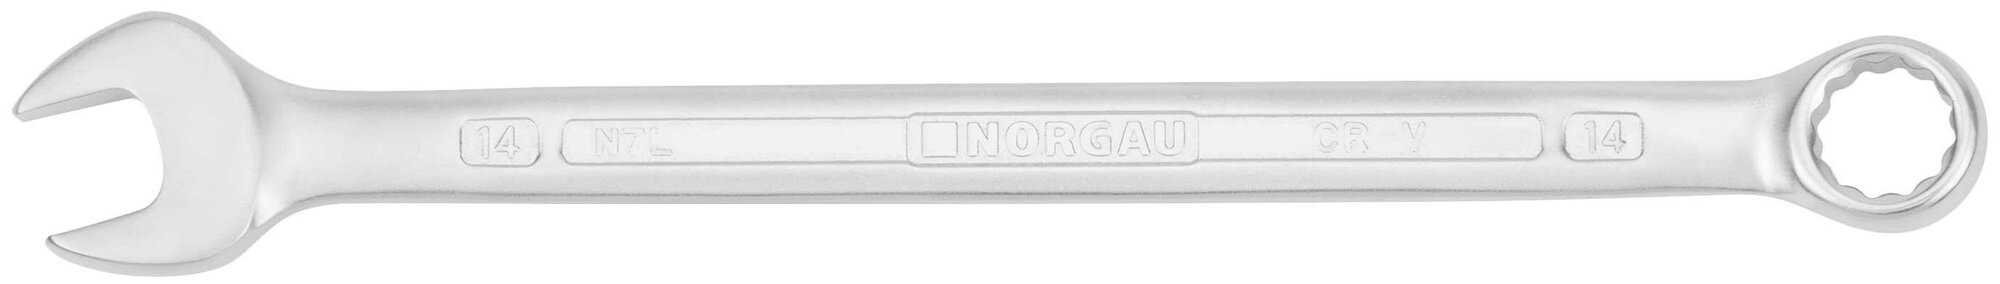 Гаечный ключ NORGAU Industrial HРM комбинированный удлиненный с рожковым и 12-гранным накидным профилем, 13 мм